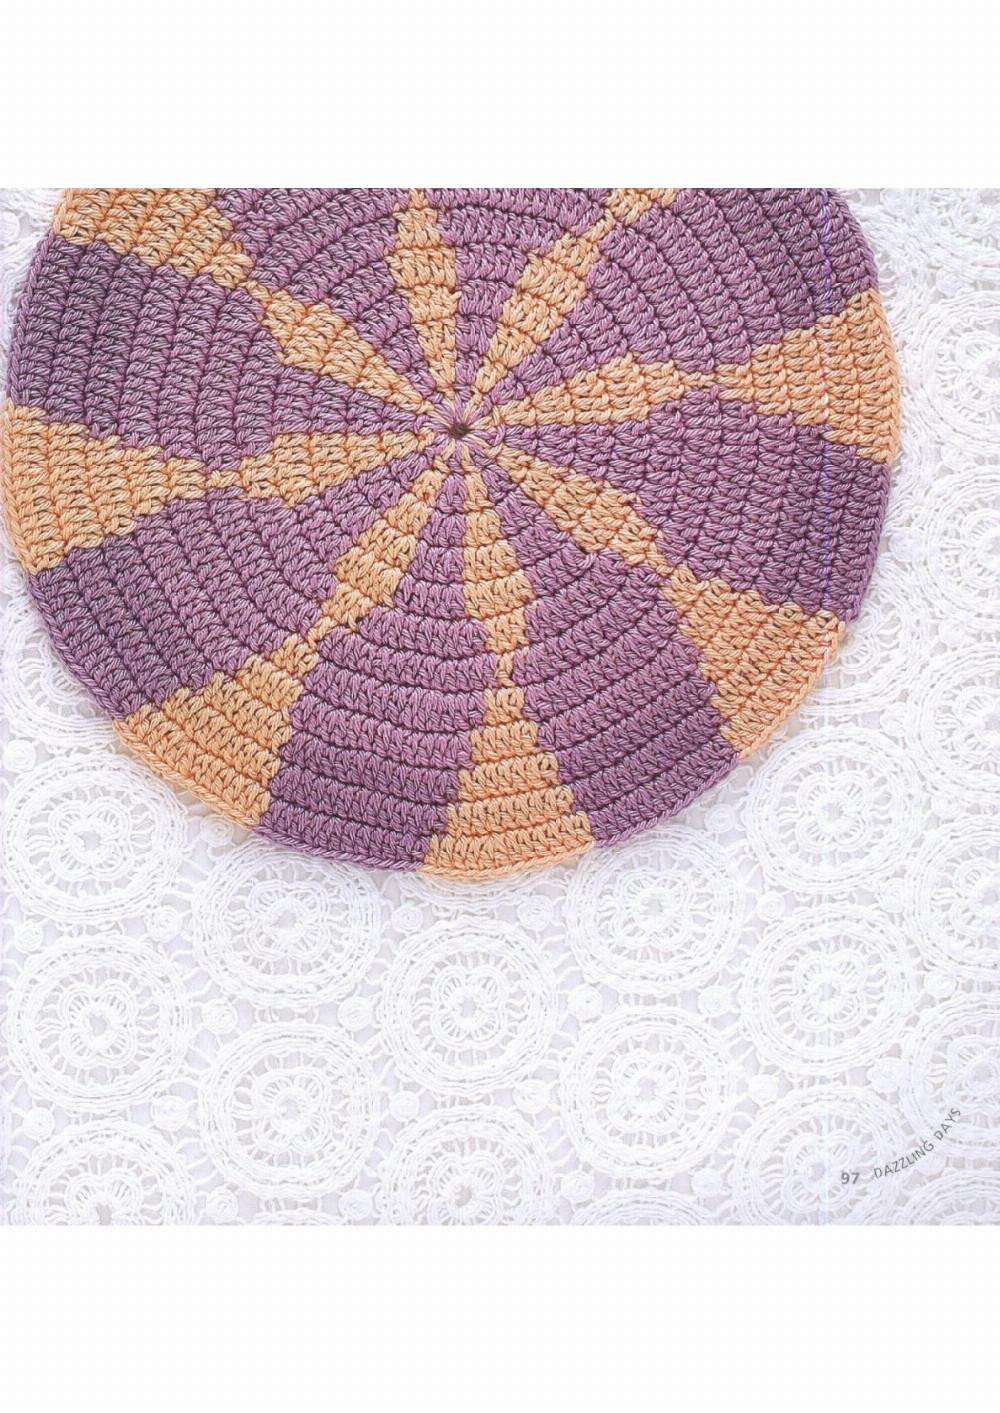 haafner linssen mandalas to crochet 30 great patterns